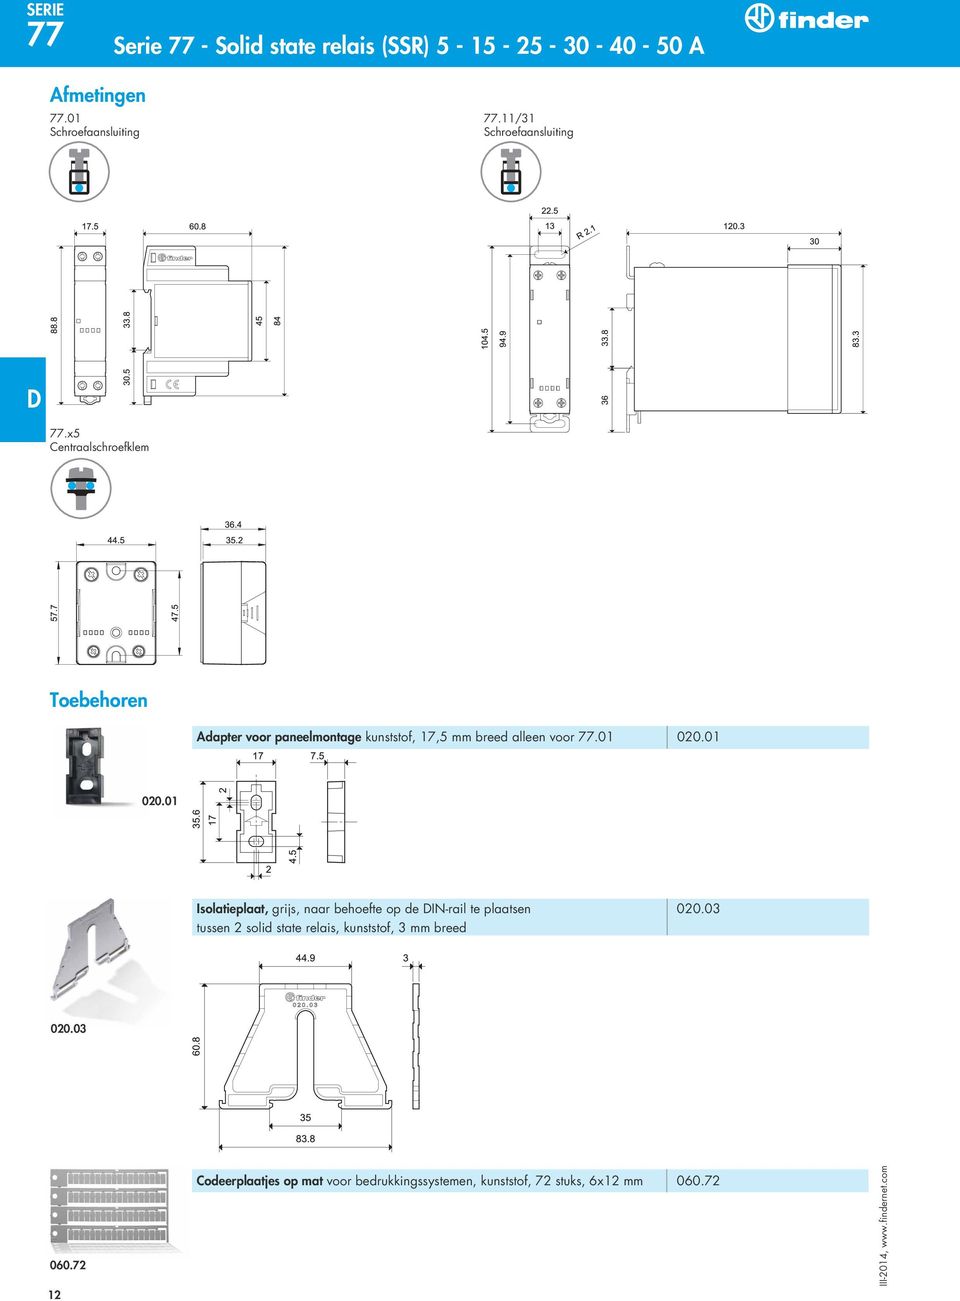 x5 Centraalschroefklem Toebehoren Adapter voor paneelmontage kunststof, 17,5 mm breed alleen voor 77.01 020.